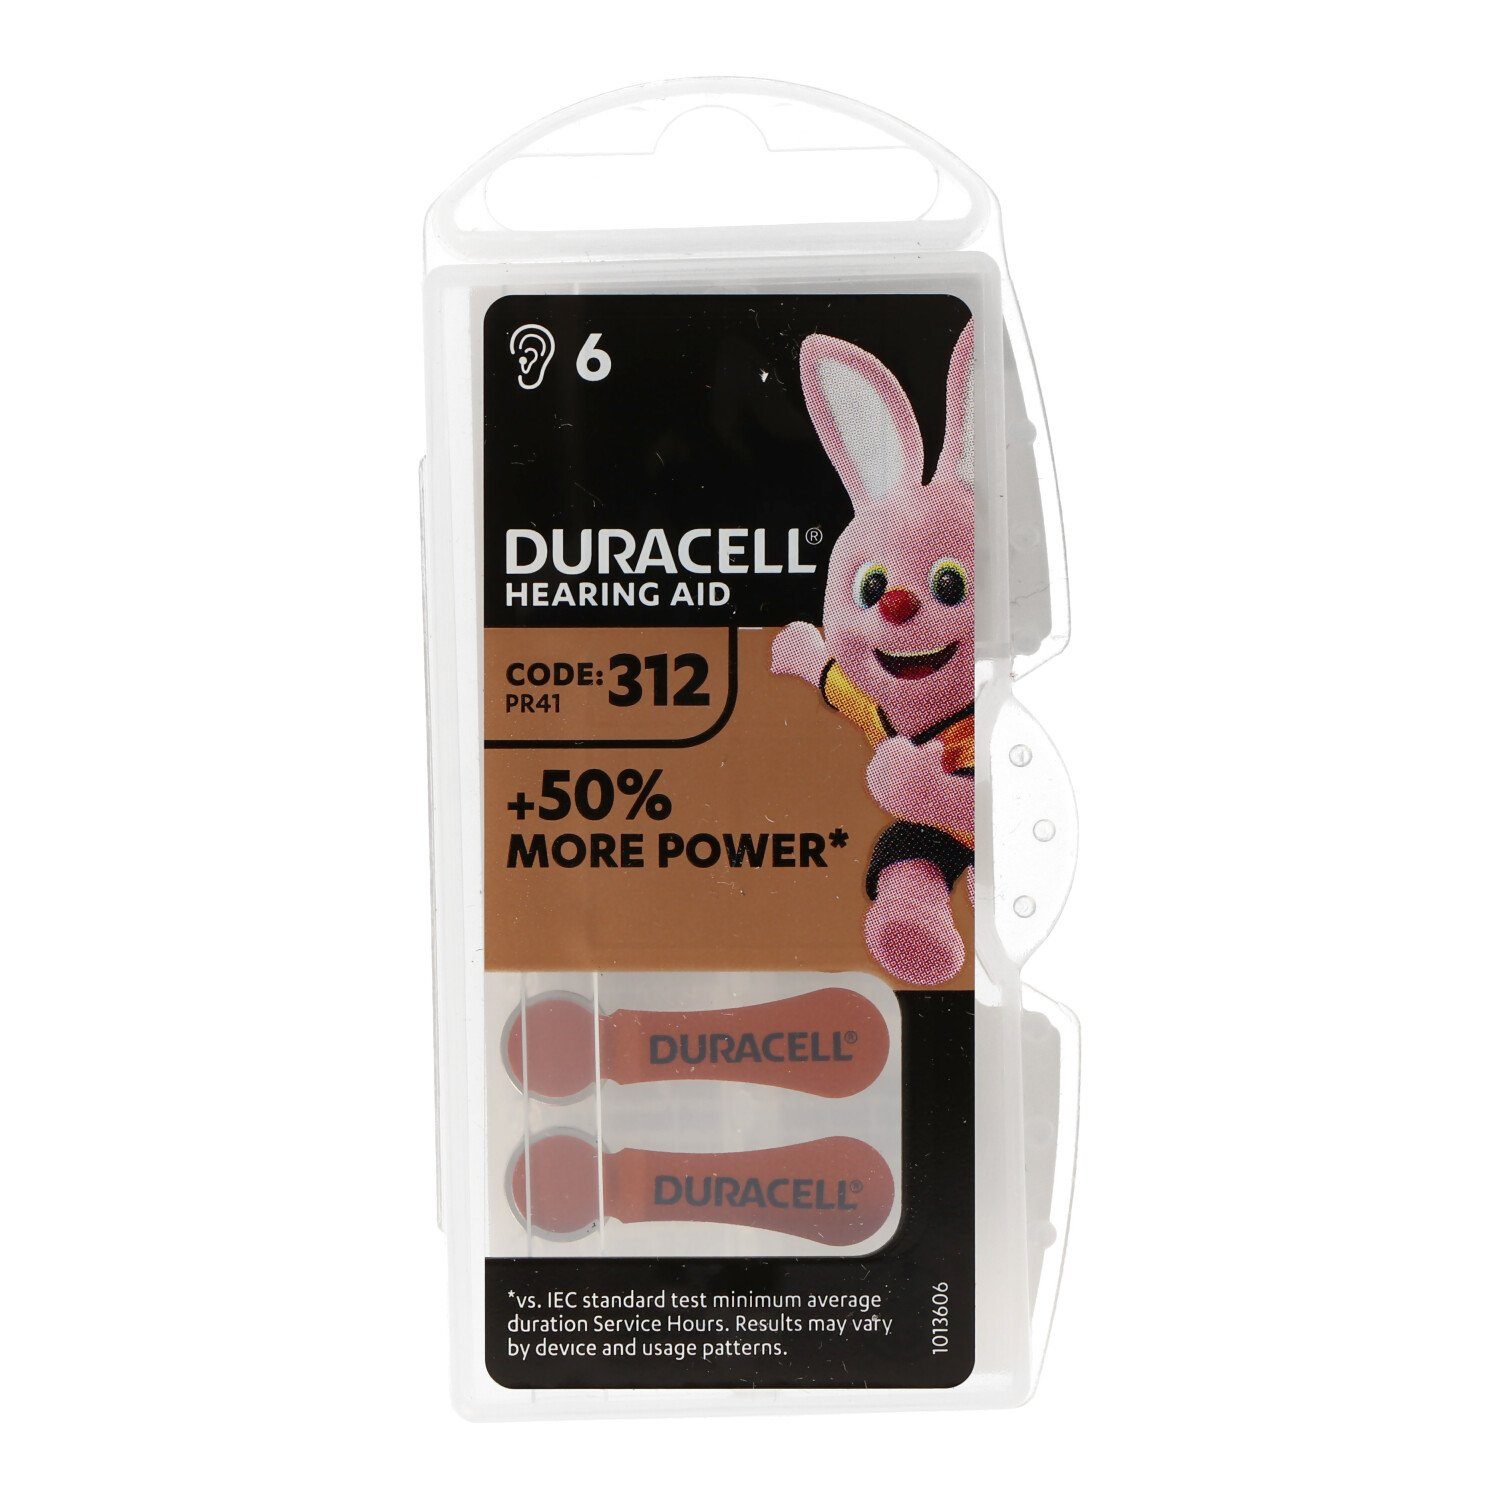 Duracell Duracell 160mAh (1,4 DA AC Batterie, 312 Zn/Luft V) 1,4Volt Hörgerätebatterie